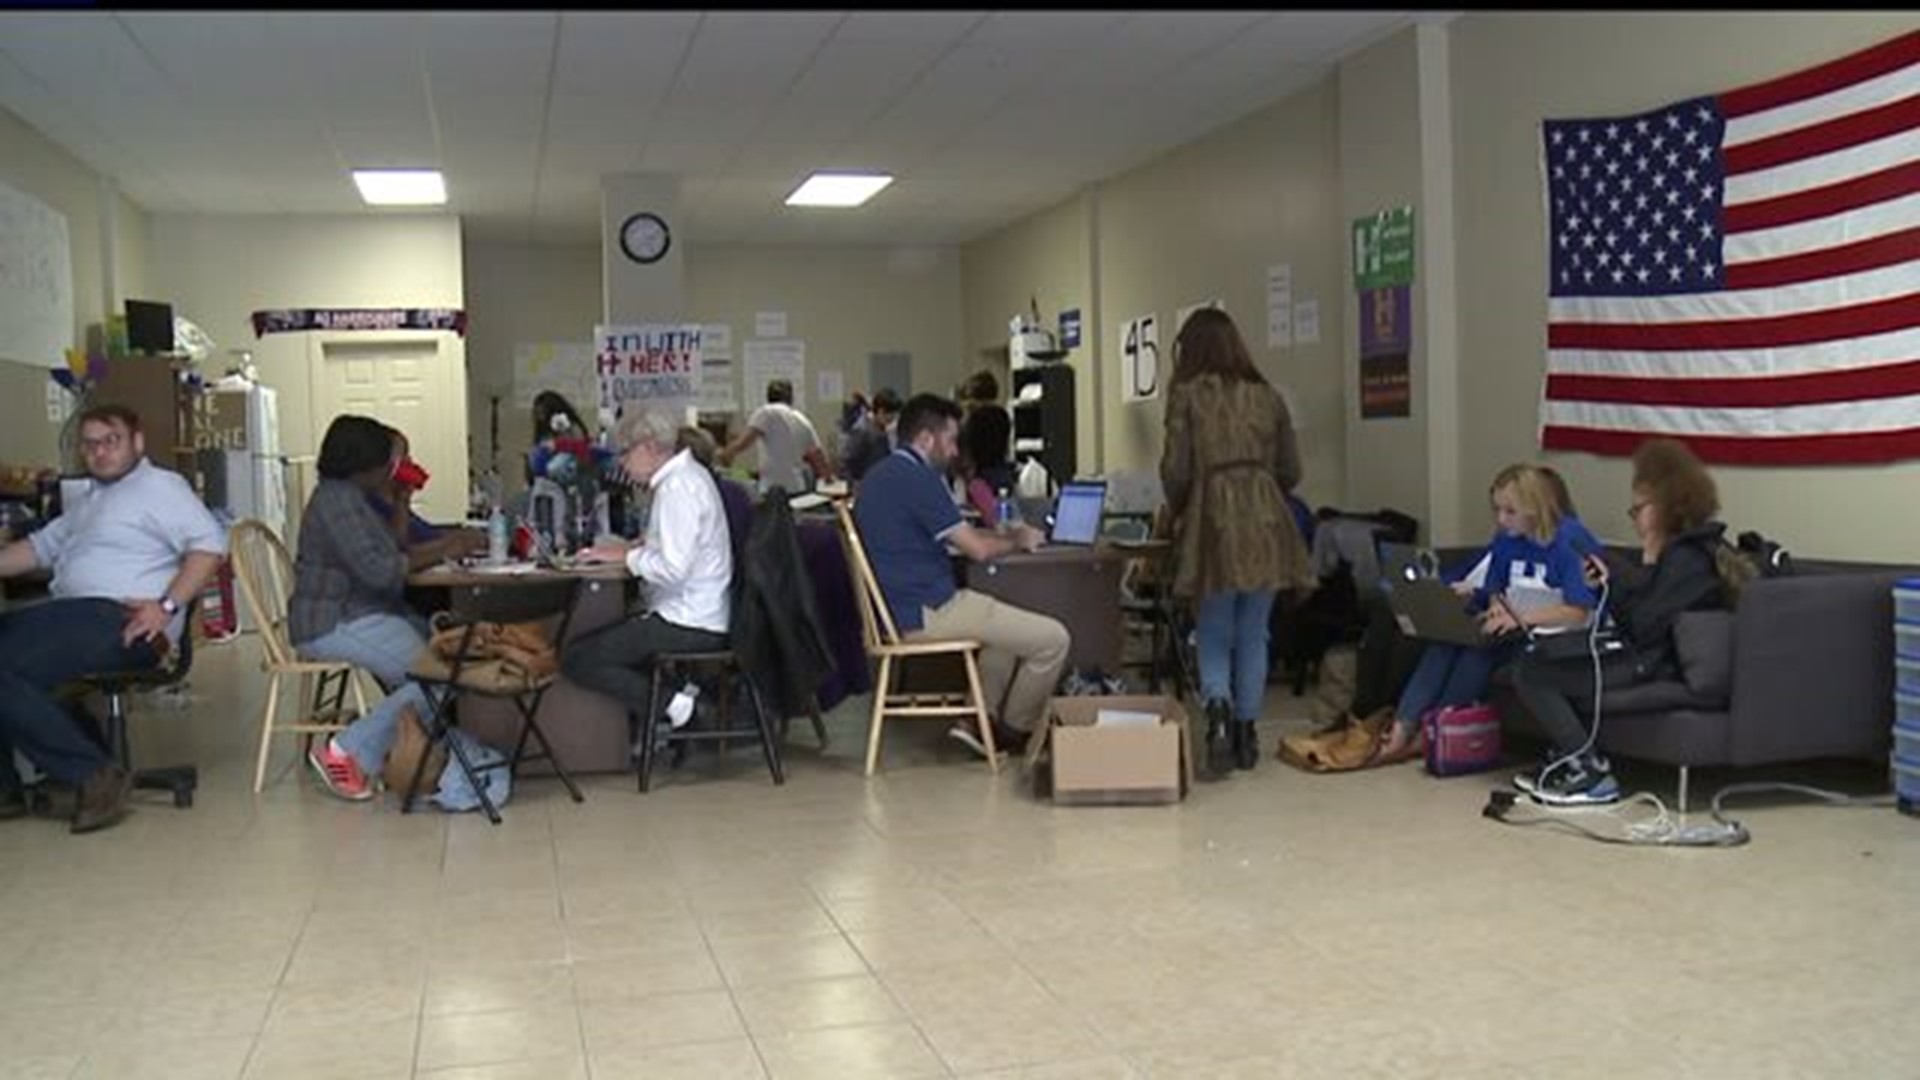 Volunteers encourage people to register to vote